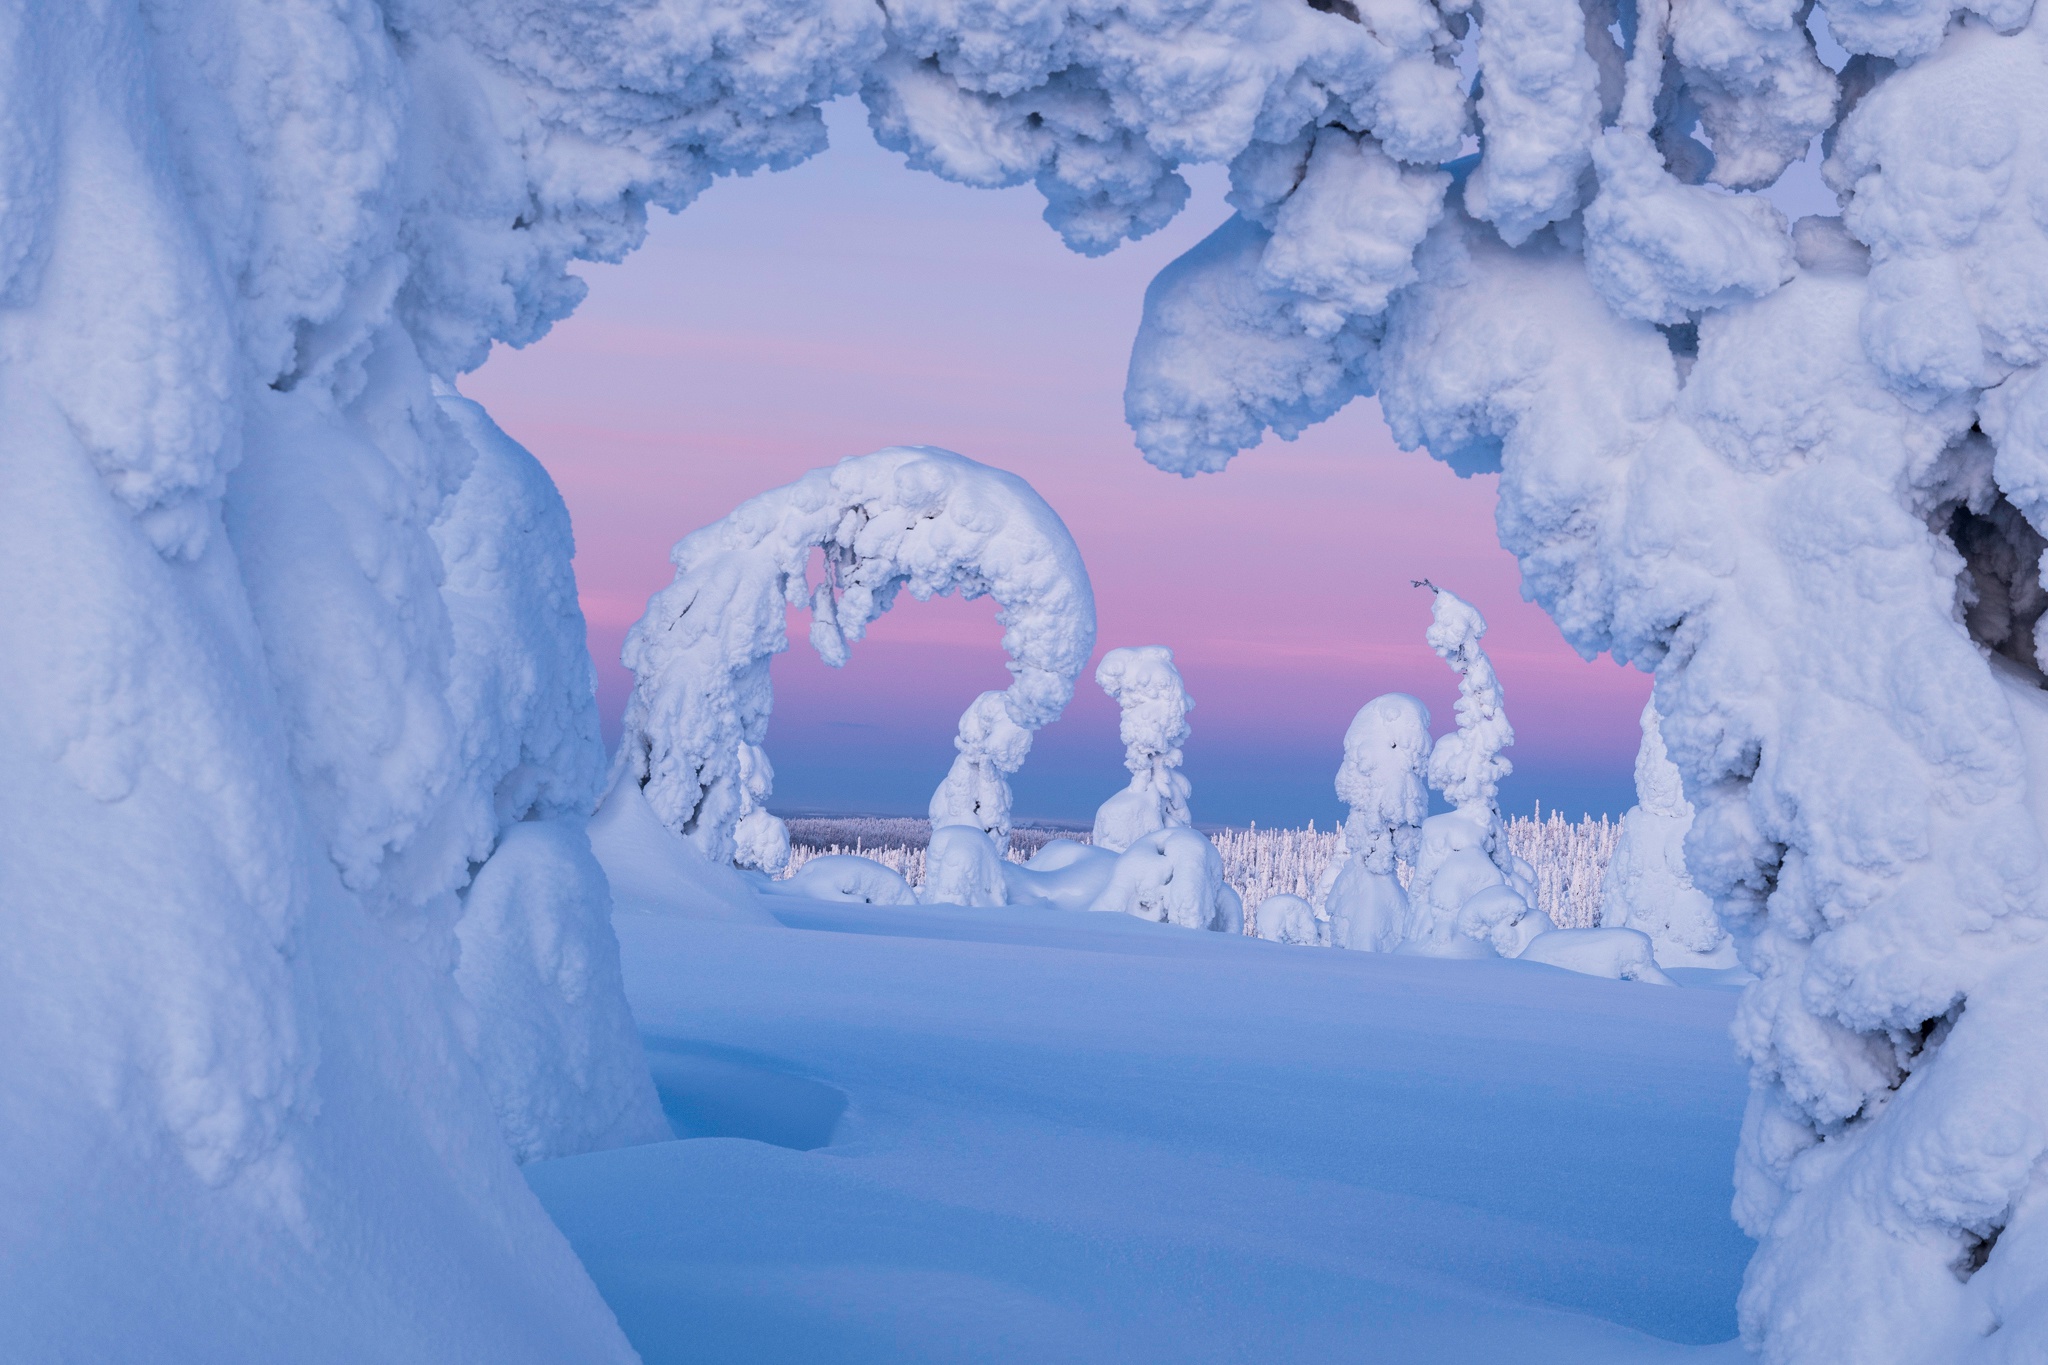 Скачать обои бесплатно Зима, Природа, Снег, Дерево, Финляндия, Земля/природа картинка на рабочий стол ПК